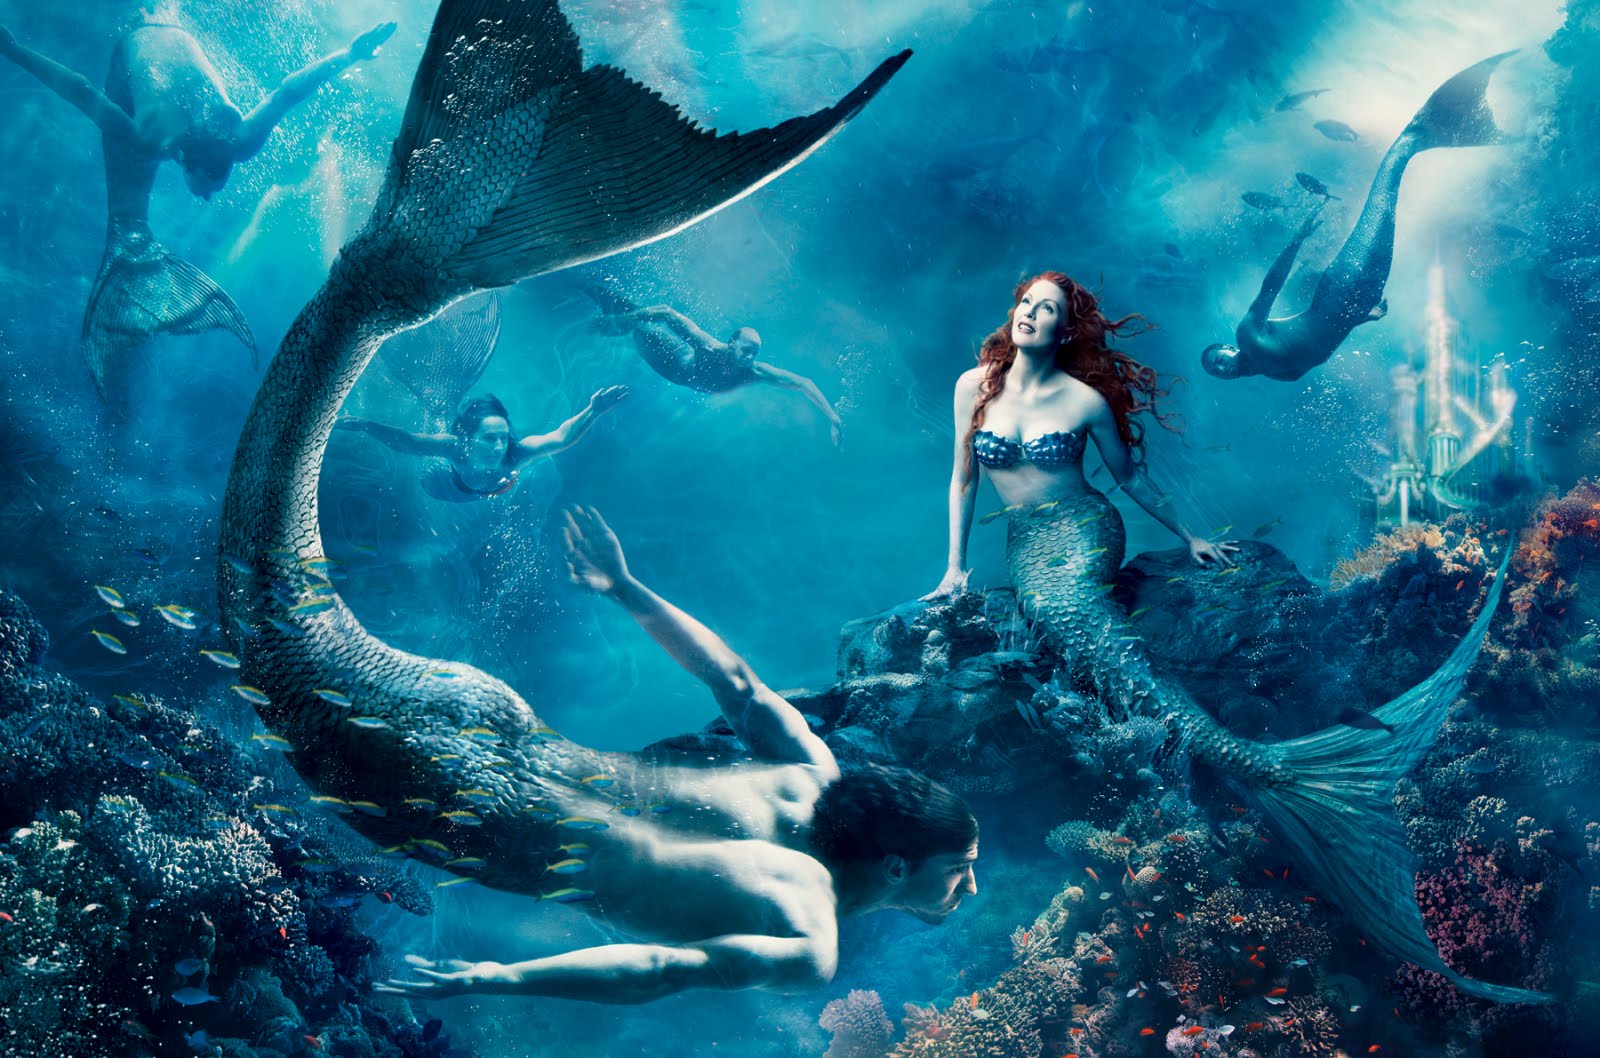 Shana Feste To Direct New Mermaid Film